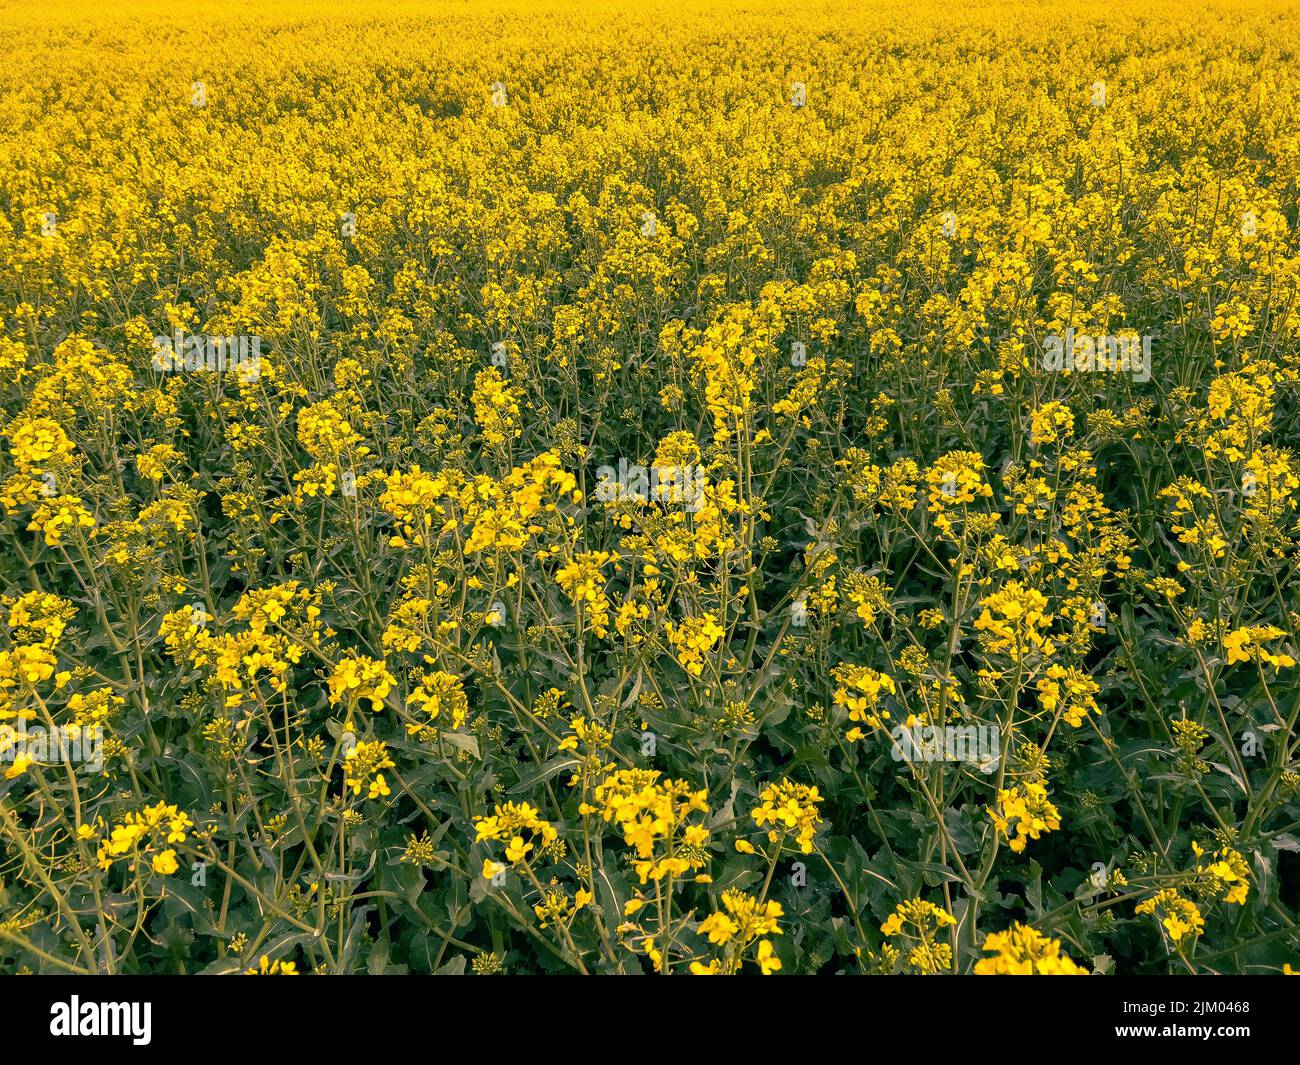 Una vista panorámica de flores amarillas con hojas verdes creciendo en un campo abierto Foto de stock